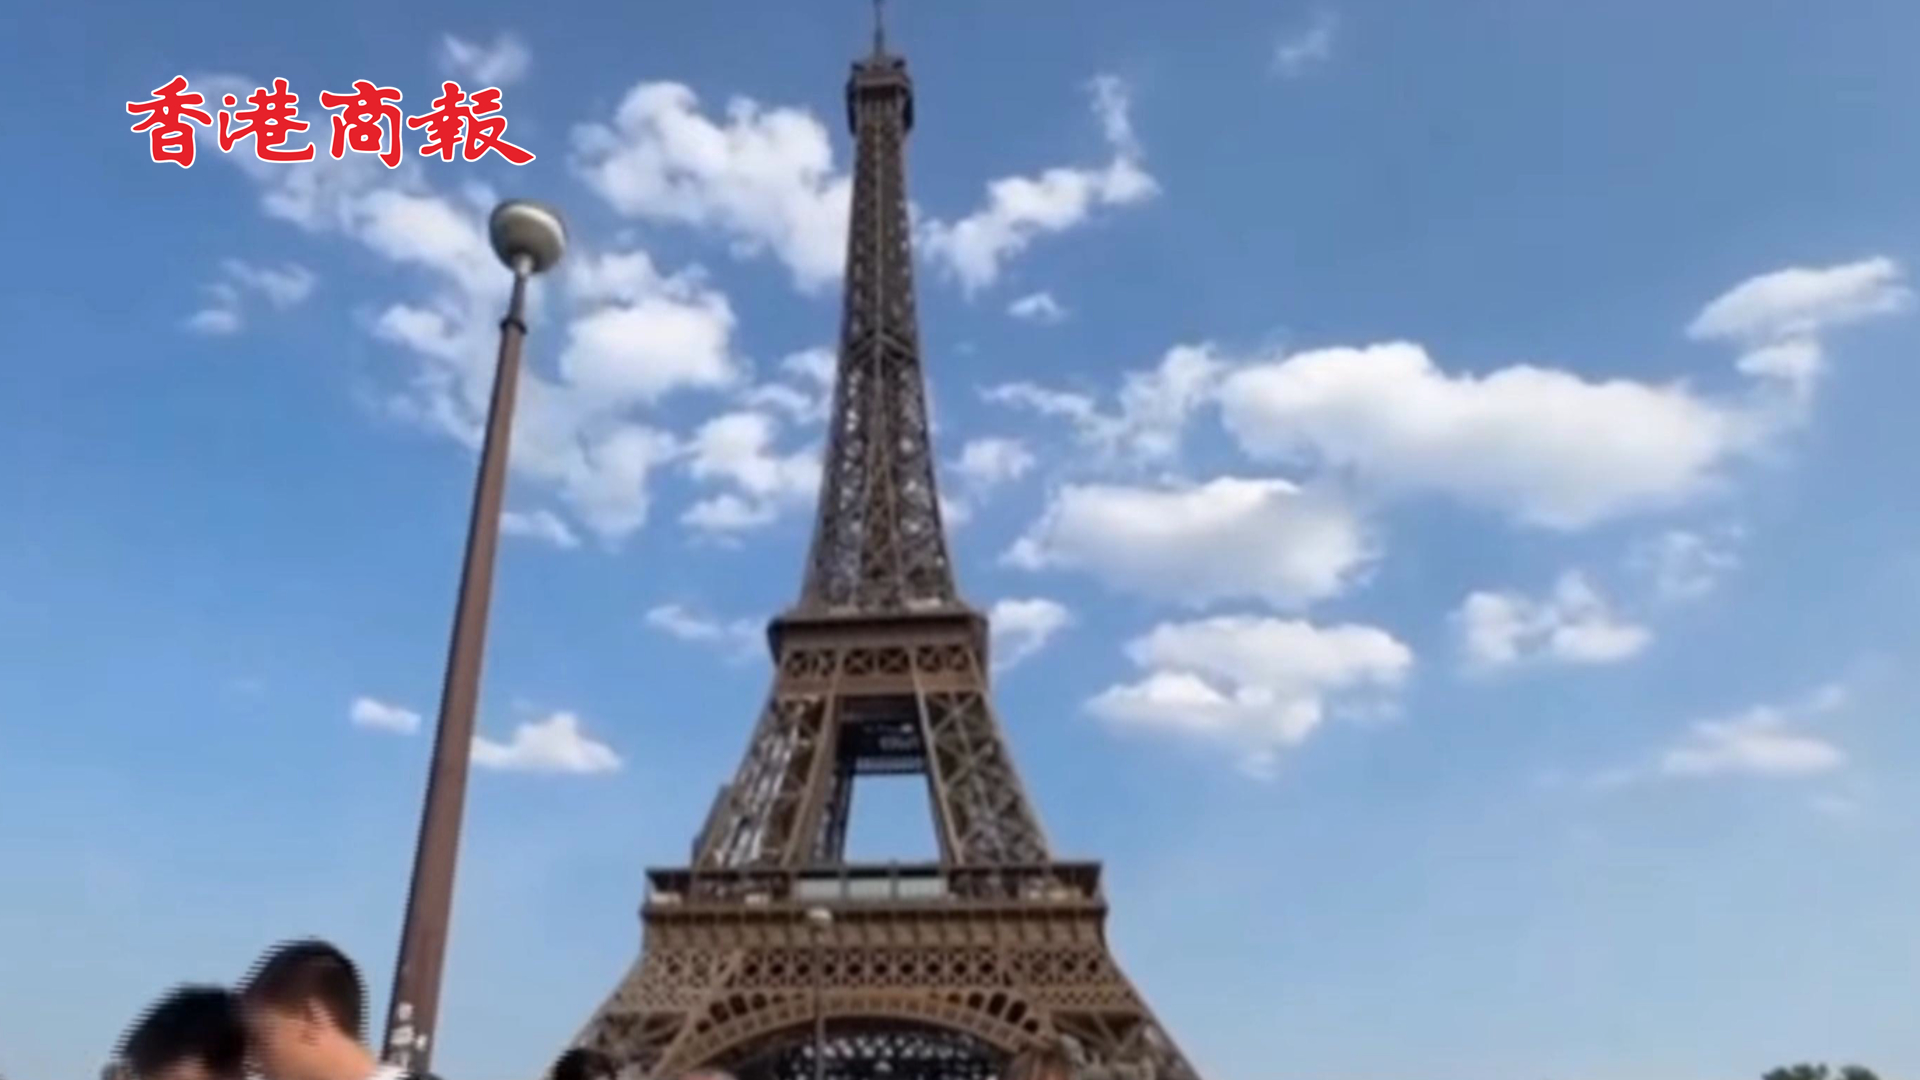 有片 | 緊急疏散 巴黎鐵塔收到炸彈威脅